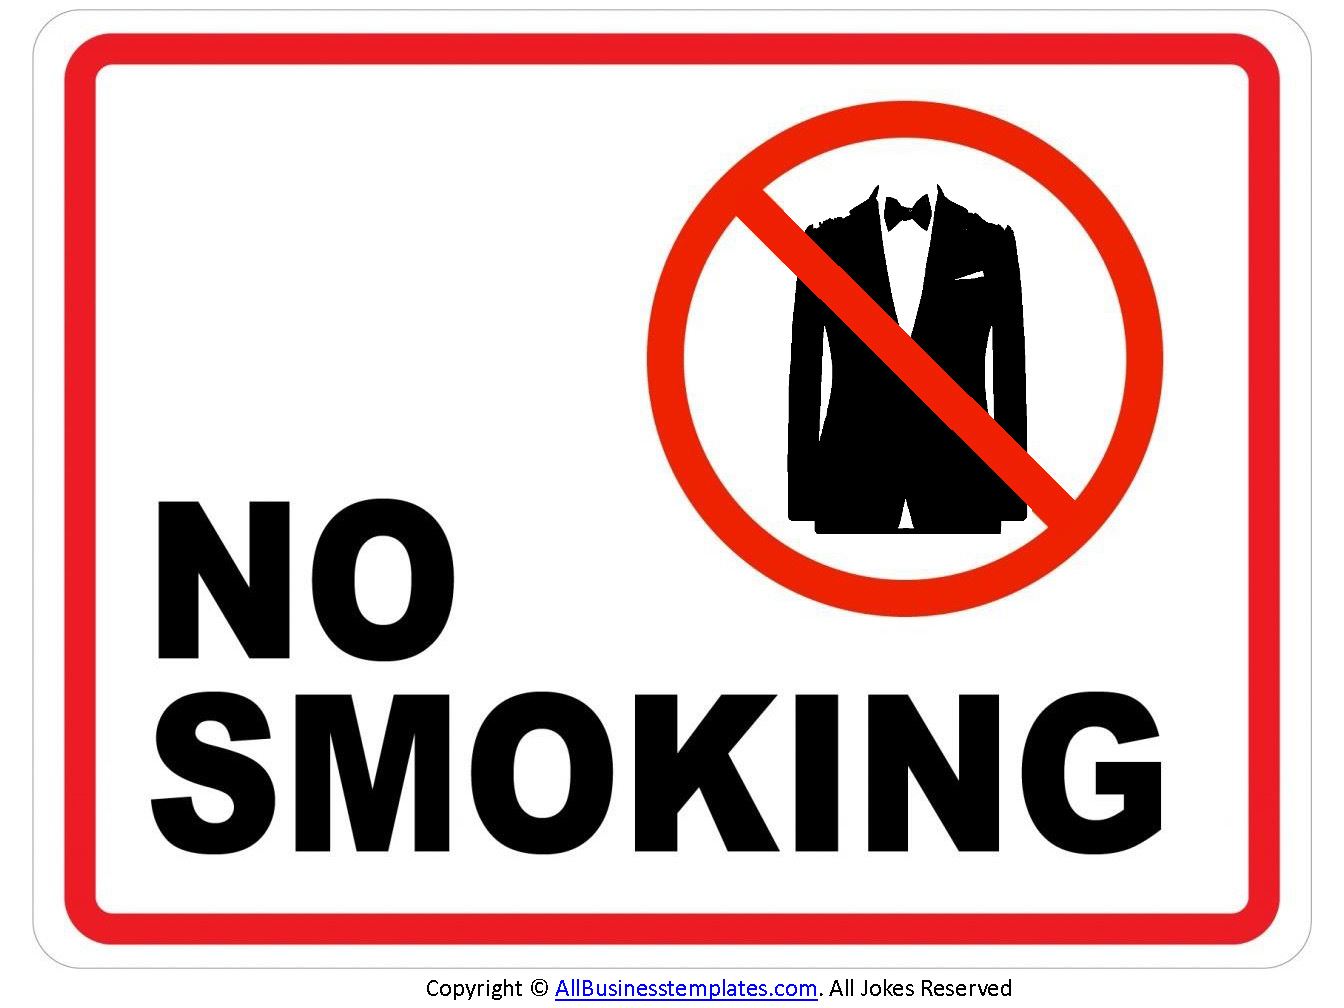 禁止吸烟 No Smoking Sign - Smoking 也是一个吸烟西装 main image